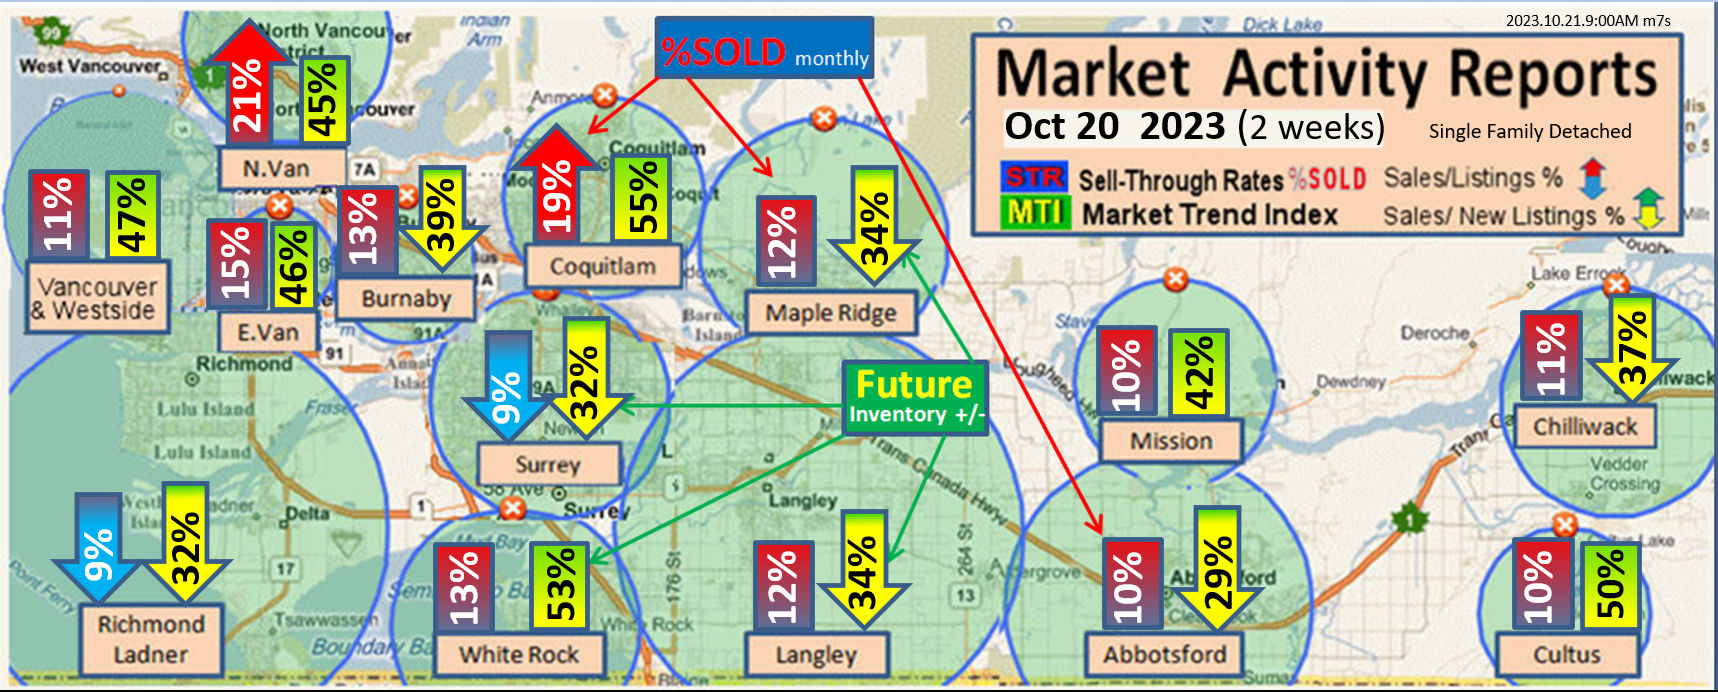 Ladner, South Delta, Real Estate Market Update Report